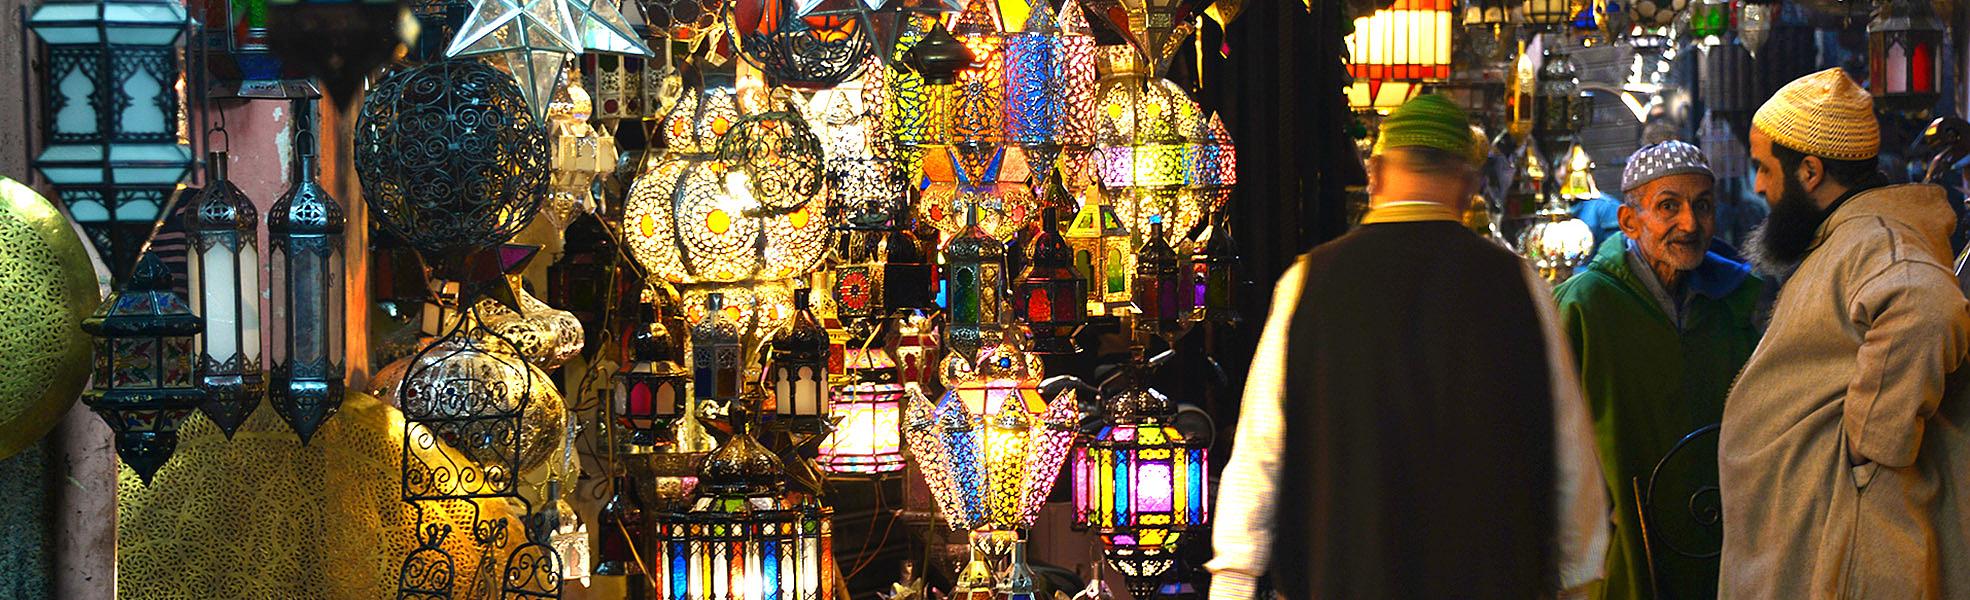 Marrakech Local Market